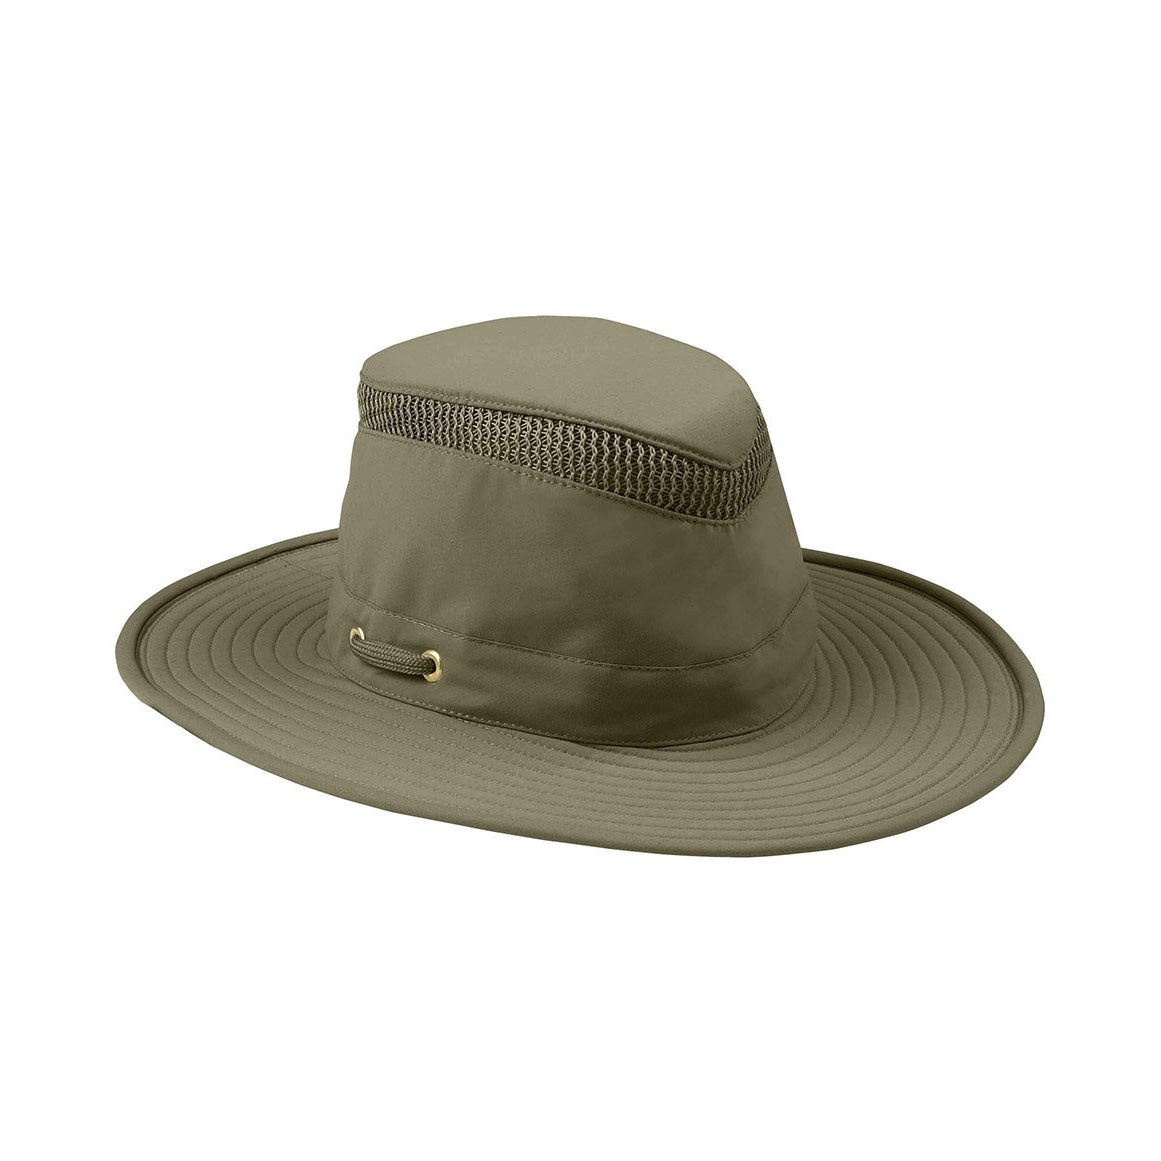 Популярная шляпа. Ковбойская шляпа олива.